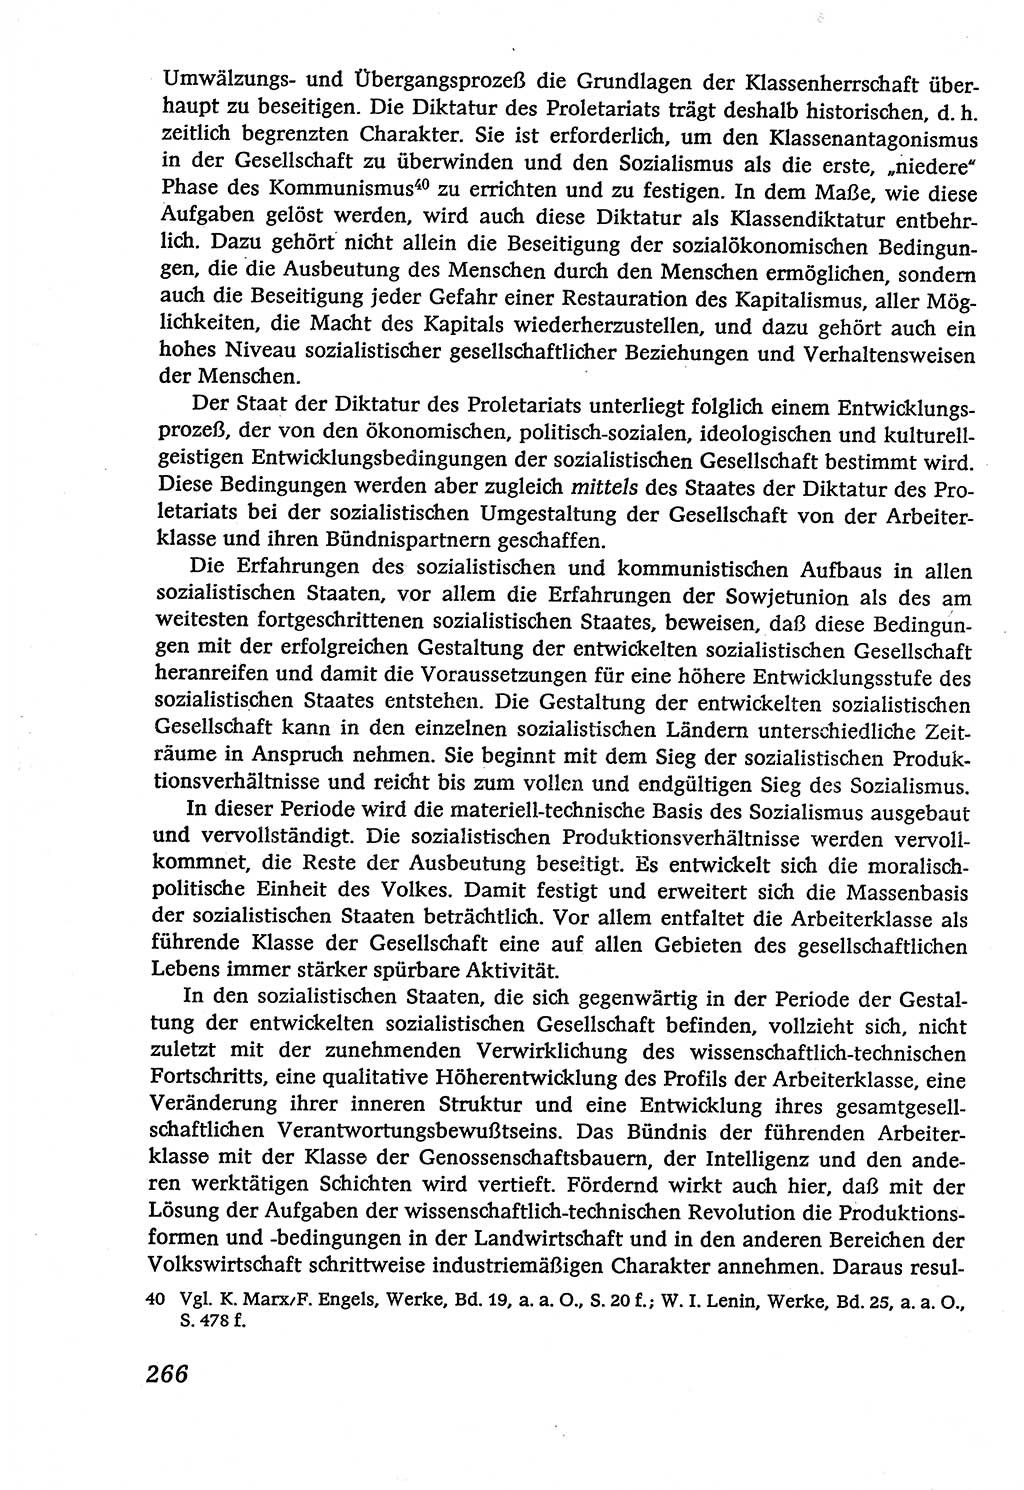 Marxistisch-leninistische (ML) Staats- und Rechtstheorie [Deutsche Demokratische Republik (DDR)], Lehrbuch 1980, Seite 266 (ML St.-R.-Th. DDR Lb. 1980, S. 266)